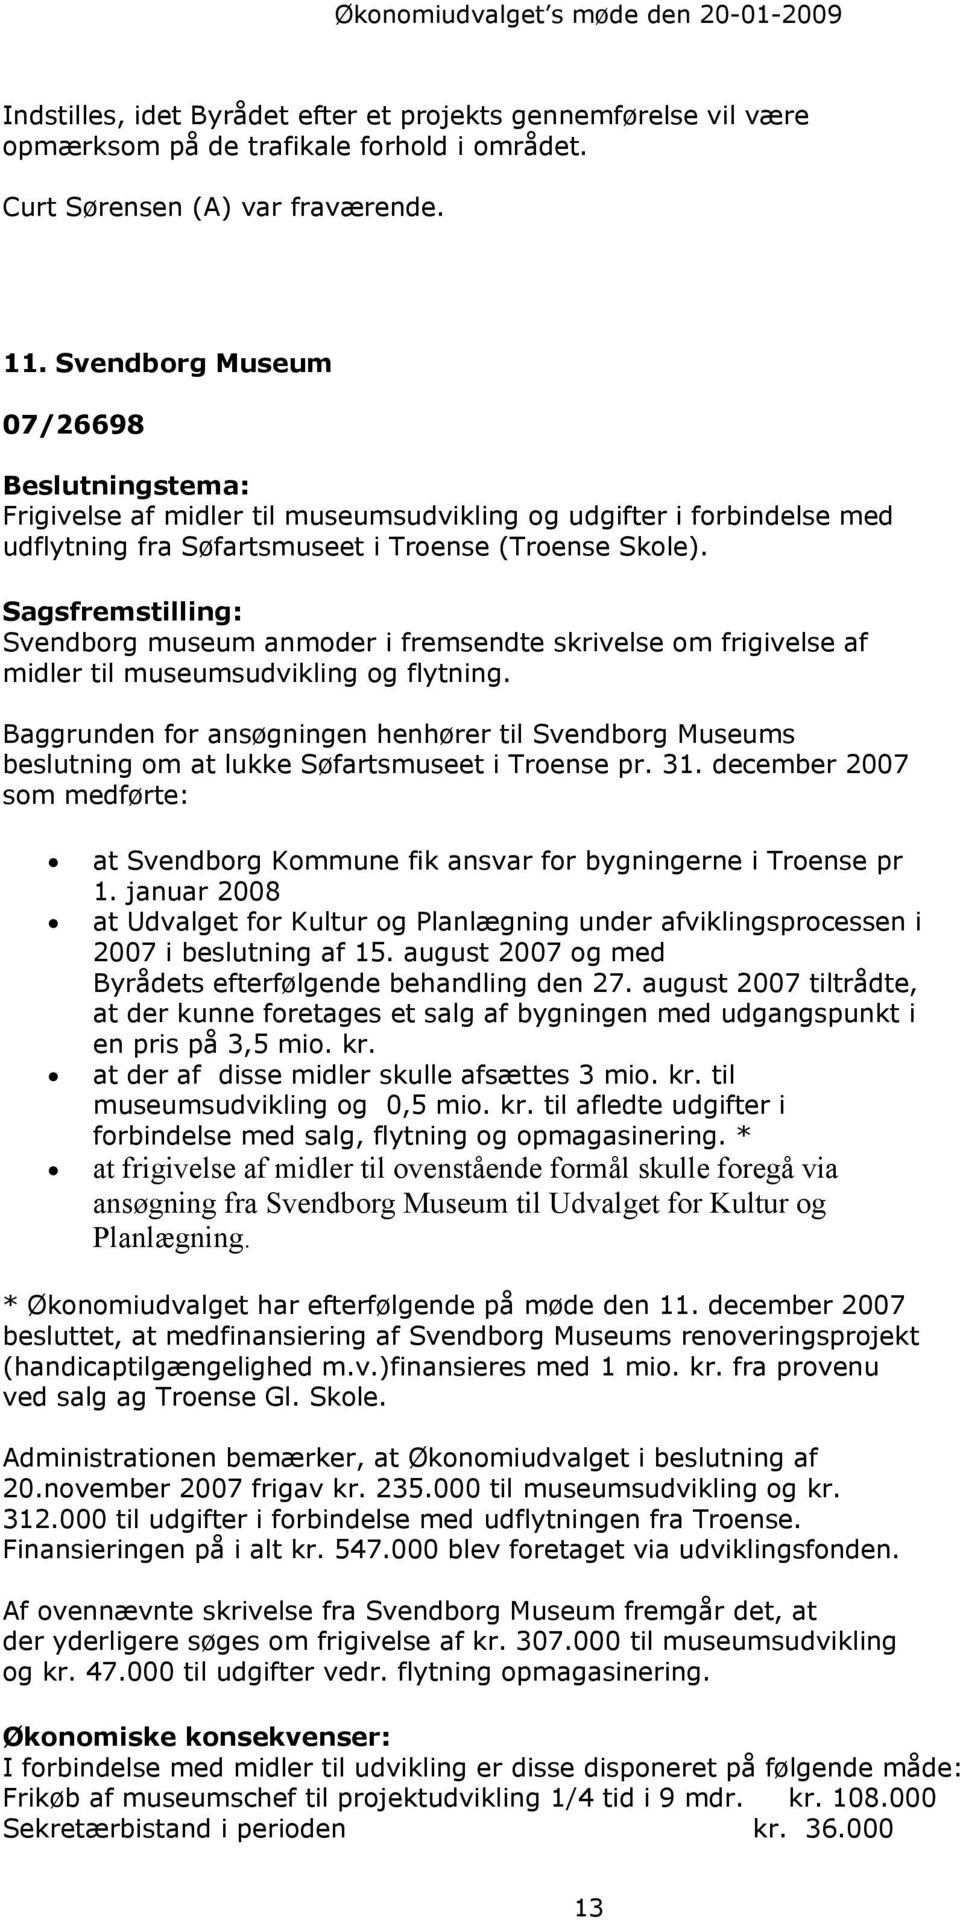 Svendborg museum anmoder i fremsendte skrivelse om frigivelse af midler til museumsudvikling og flytning.